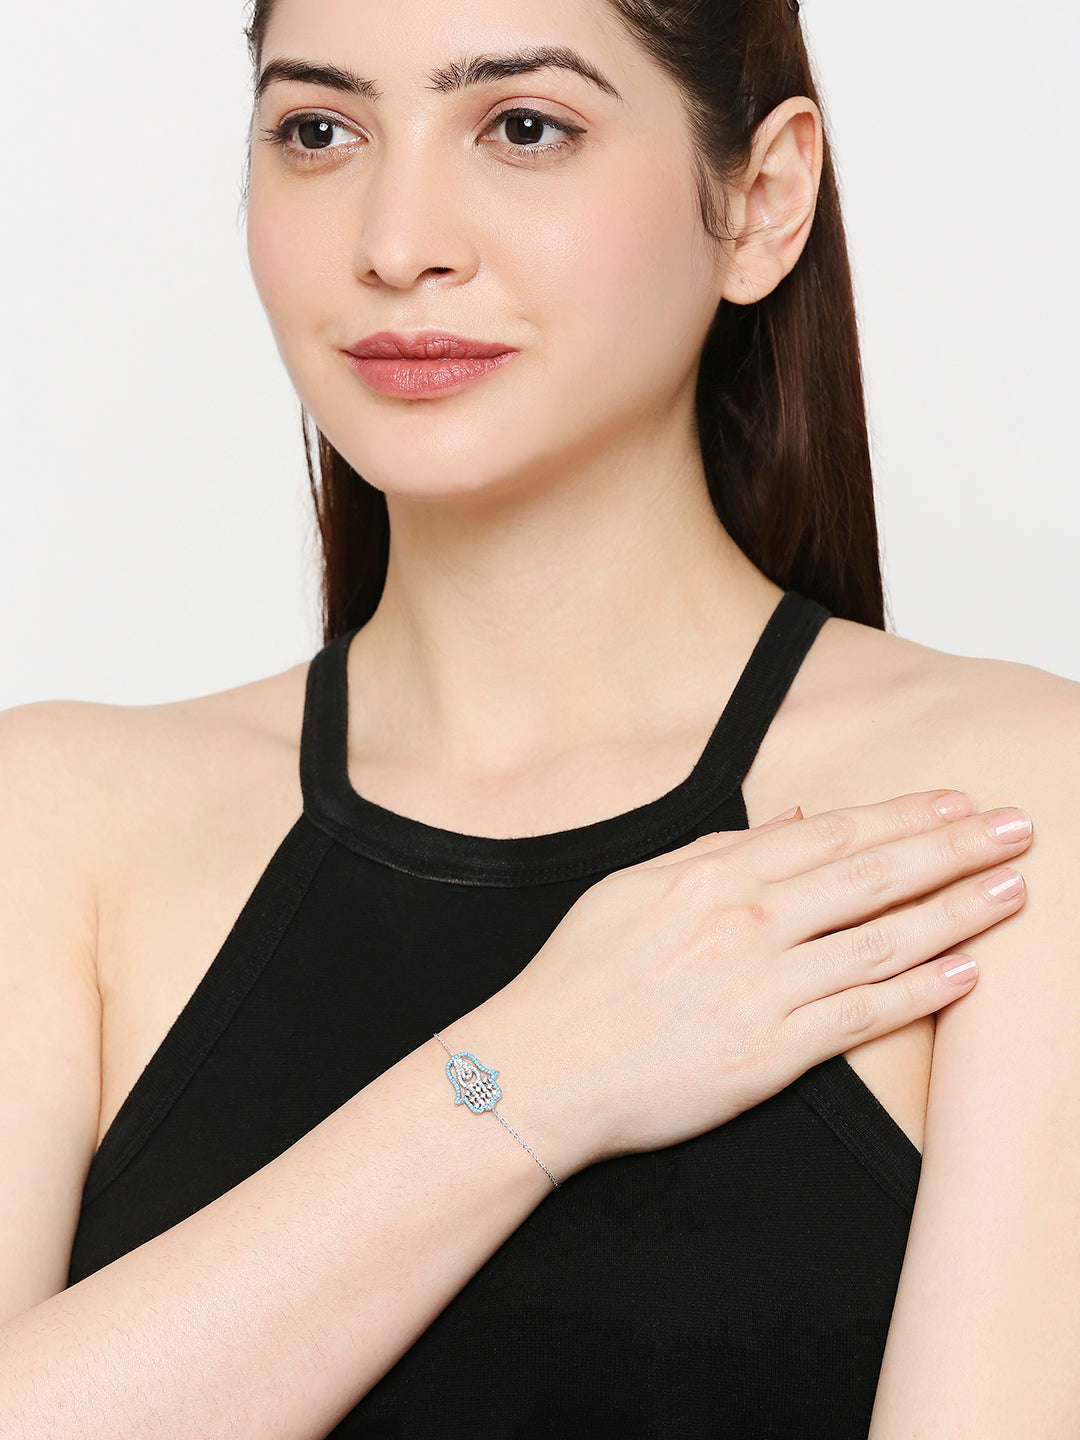 Crystal Stylish and Elegant Heart Shape Design Korean Bracelets for Gi